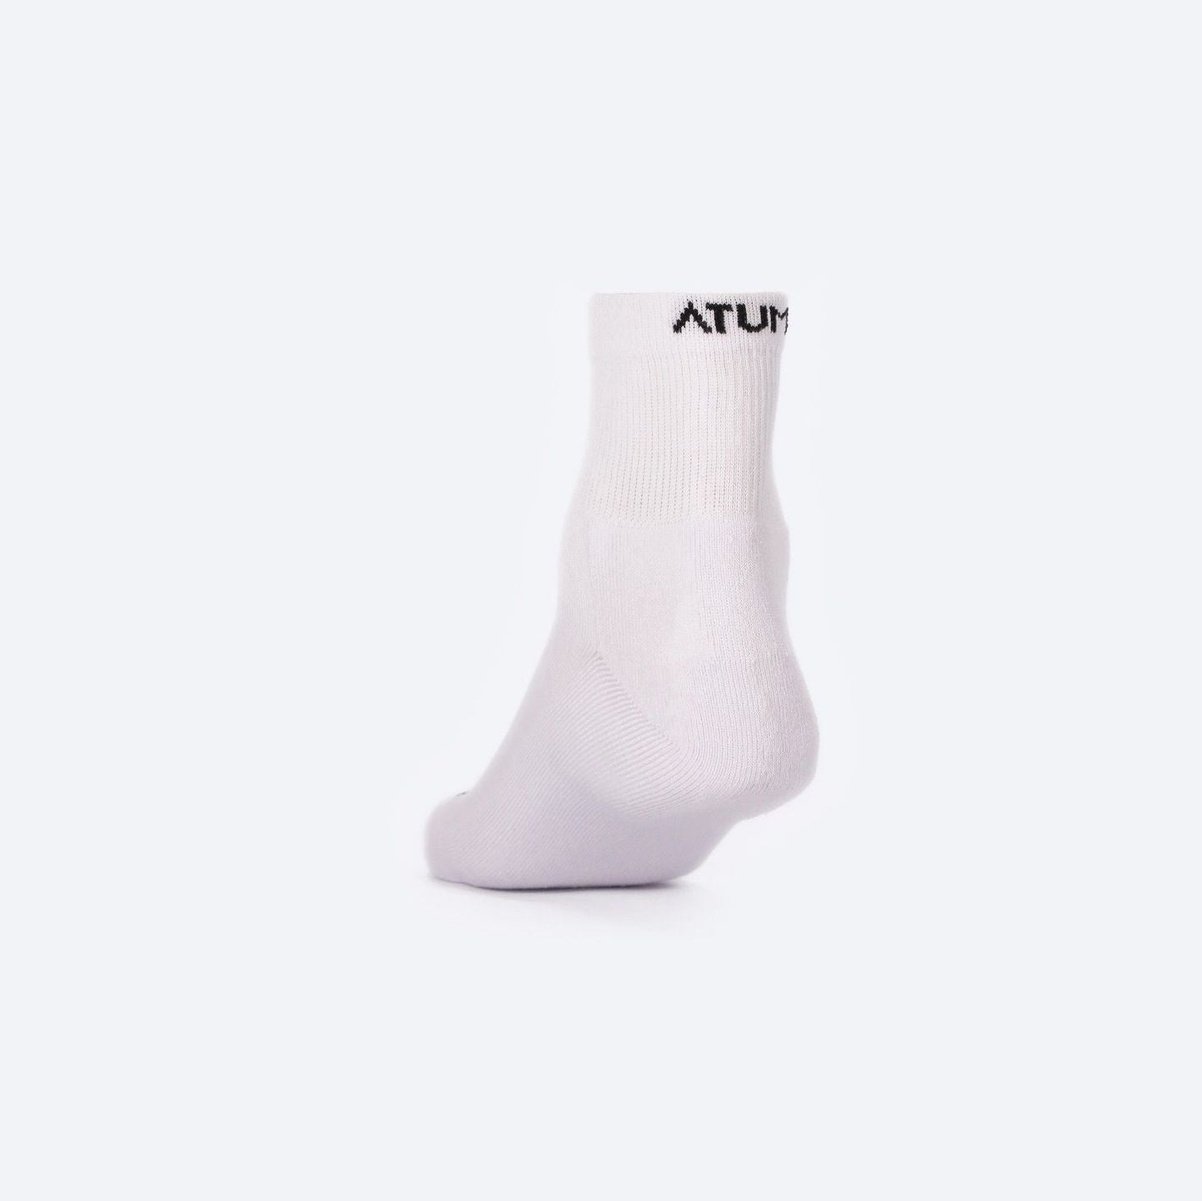 Atum adult Unisex mid-crew socks - pack of 3